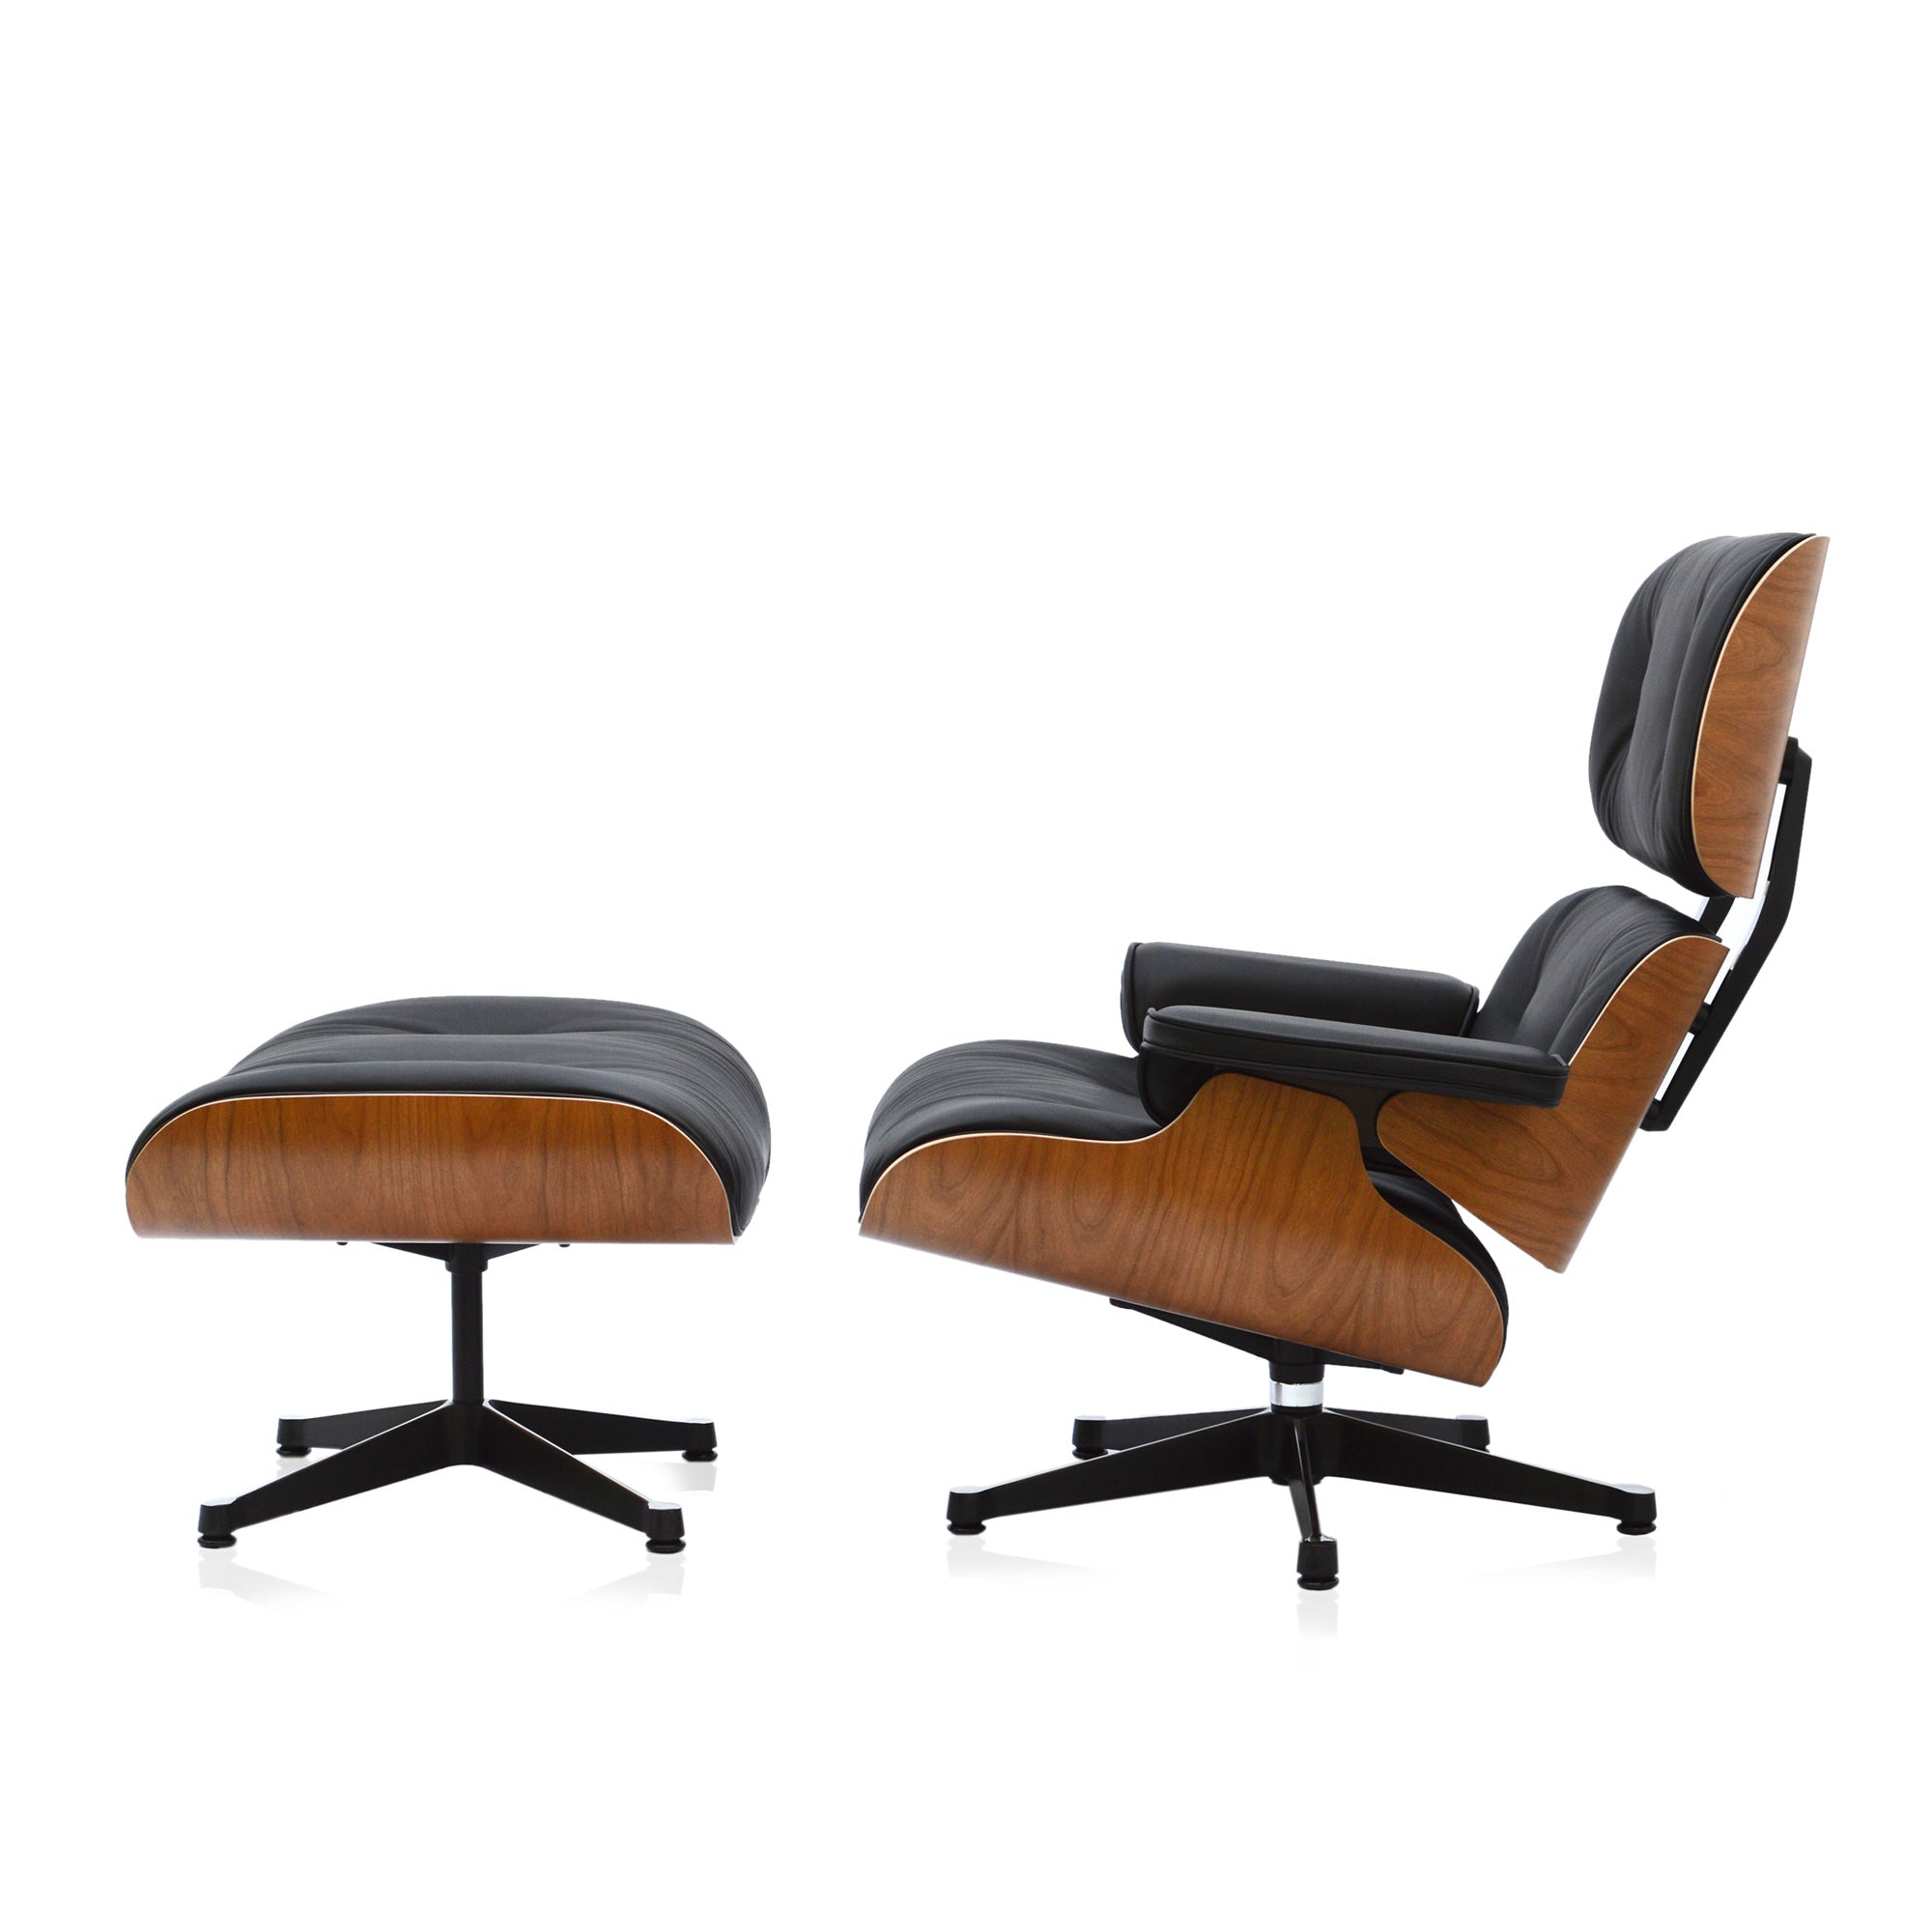 Sociologie alarm Afstotend Vitra Eames Lounge Chair & Ottoman XL Amerikanische Kirsche